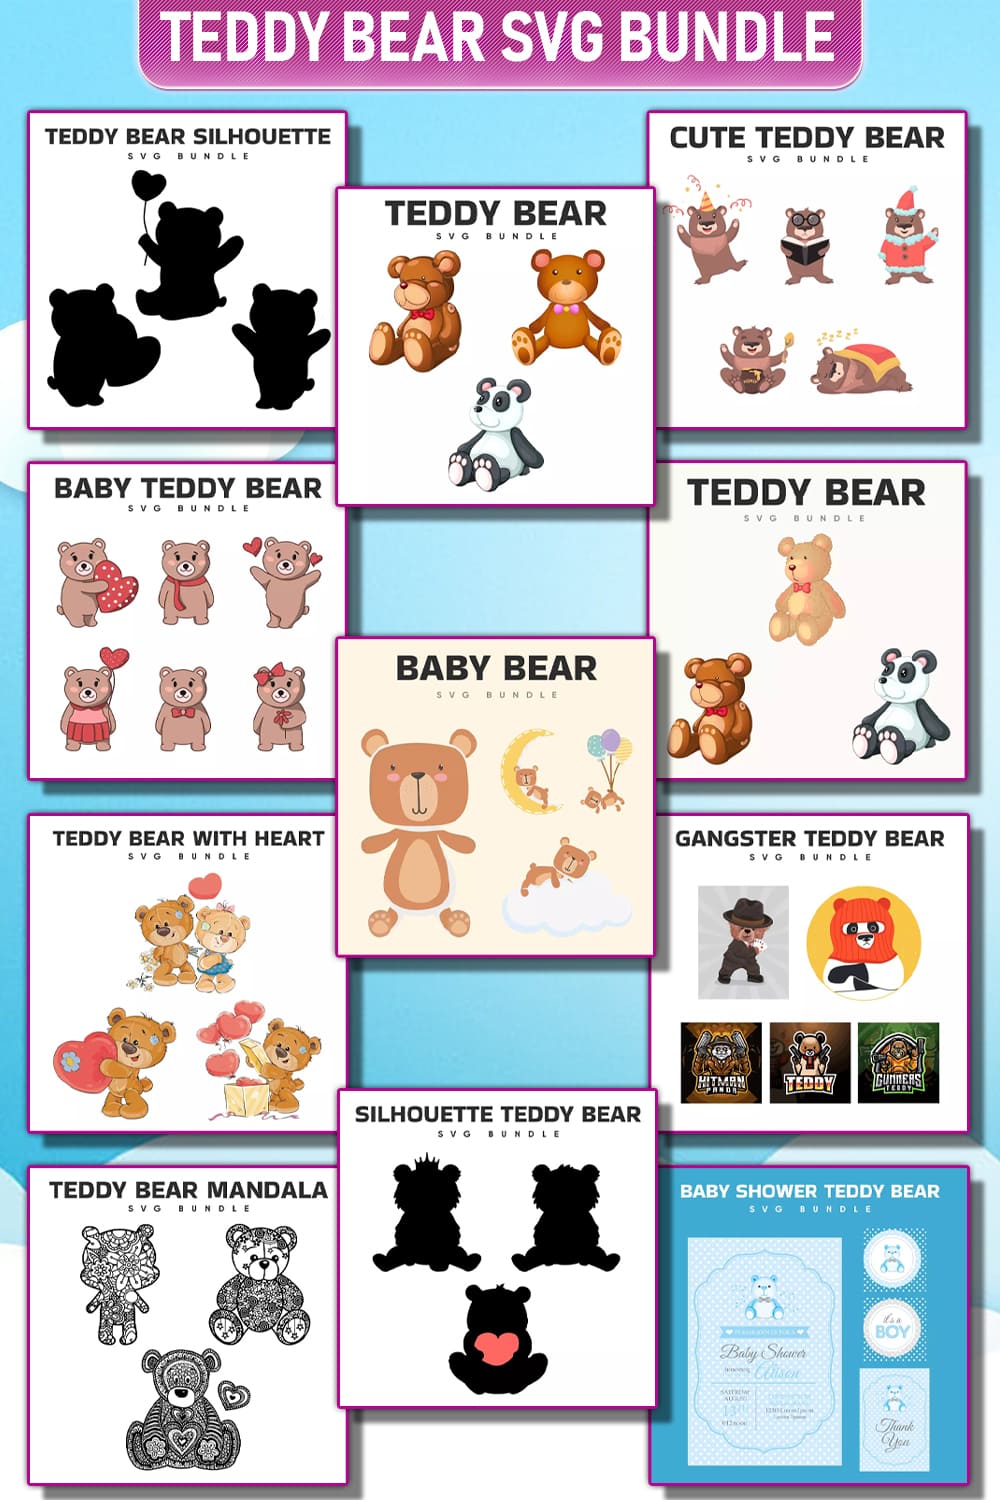 The teddy bear svg bundle includes teddy bears.